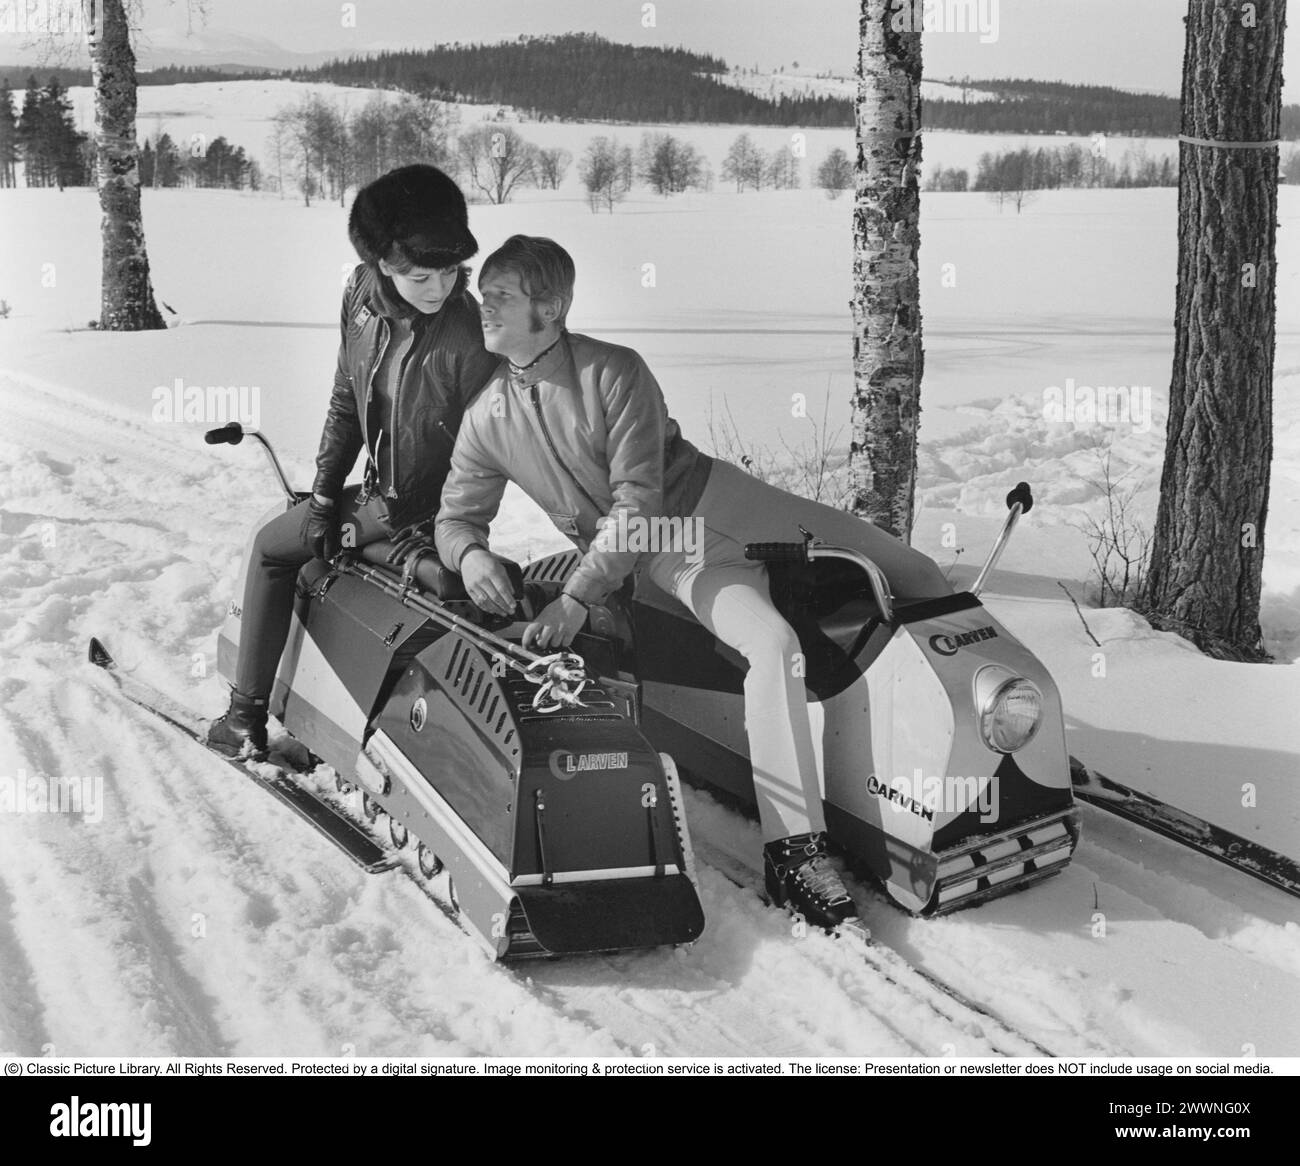 „Larven“ (die caterpillar) Ein schwedisches unkonventionelles Schneemobil, das nun Kultstatus erreicht hat. Es bestand aus einer langen raupenkette mit einem Sitz, auf dem der Fahrer mit Hilfe seines Gewichts und mit seinen Skiern saß und lenkte. Sie wurde 1965 von der Firma Lenko in Östersund, gegründet von Lennart Nilsson, eingeführt. Bei seiner Einführung kostete er 3.000 SEK. Insgesamt wurden etwa 4.500 Exemplare gebaut. Die Höchstgeschwindigkeit betrug 48 km/h. Die caterpillar wurde mit glasfaserverstärkten Kunststoffbändern nach vorne getrieben. Die raupe war 178 cm lang, 81 cm breit und hatte ein Gesamtgewicht von 76 kg. Alumin Stockfoto